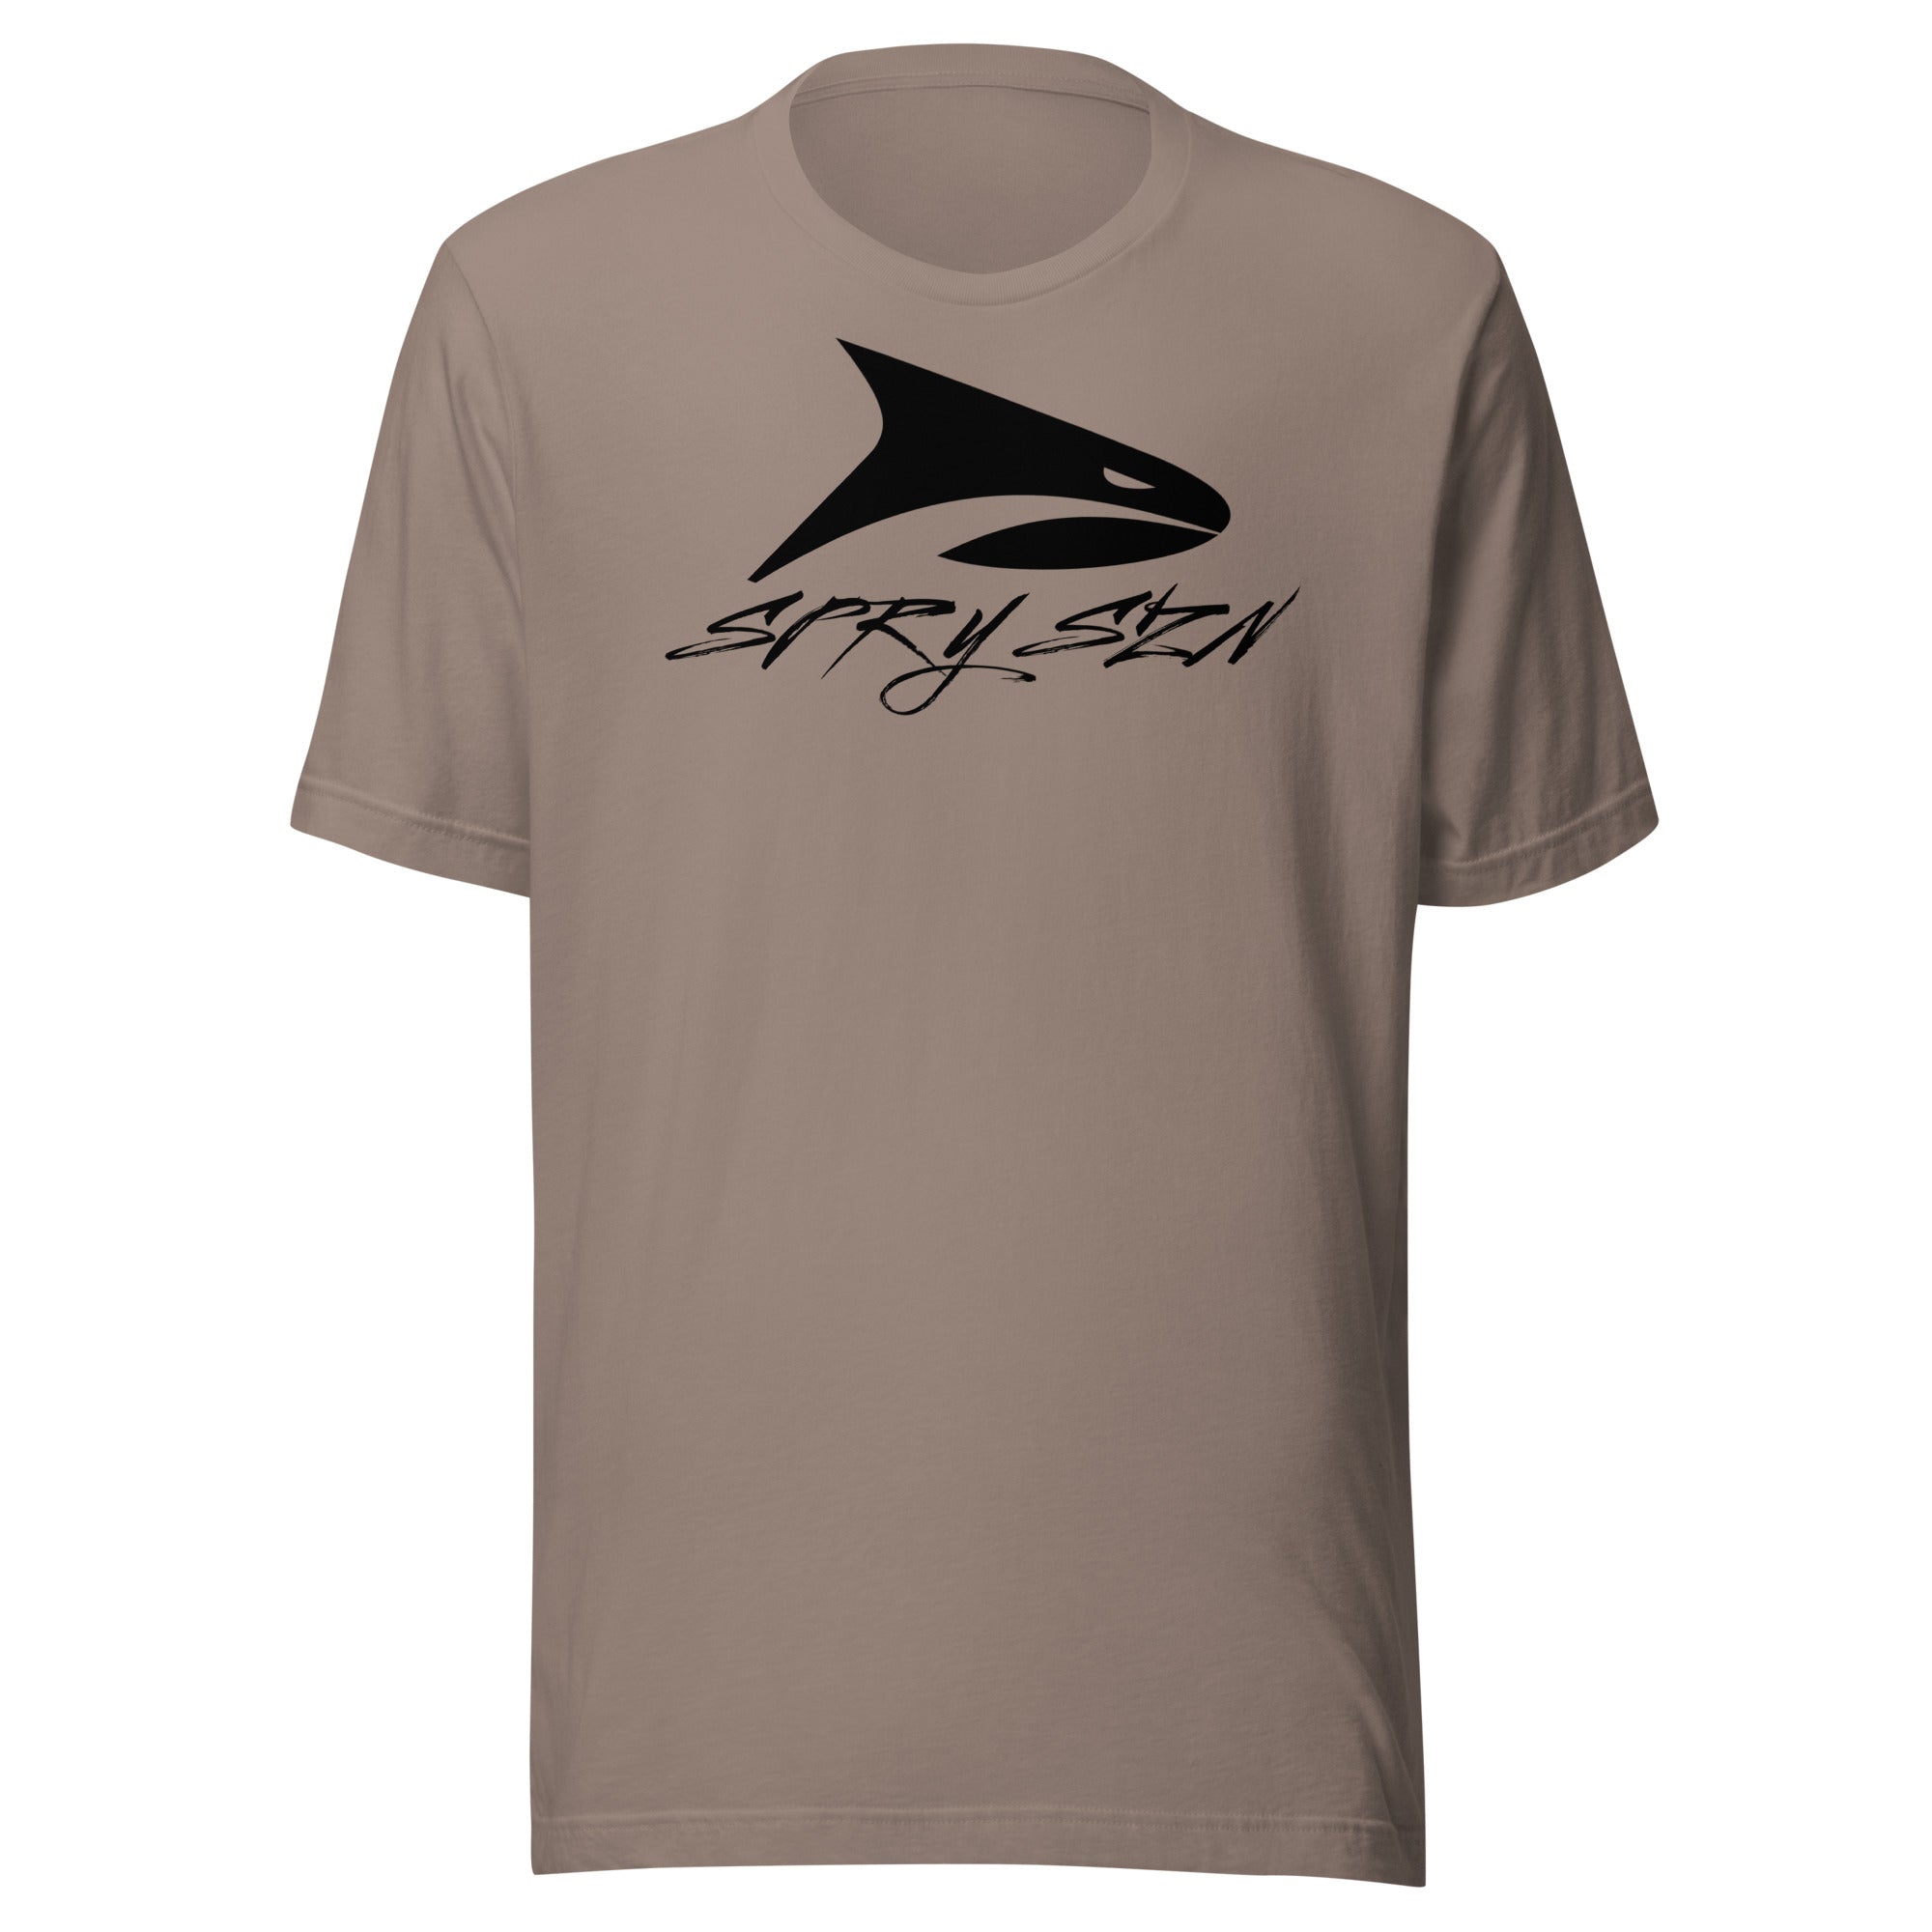 SPRY SZN Black Shark T-Shirt